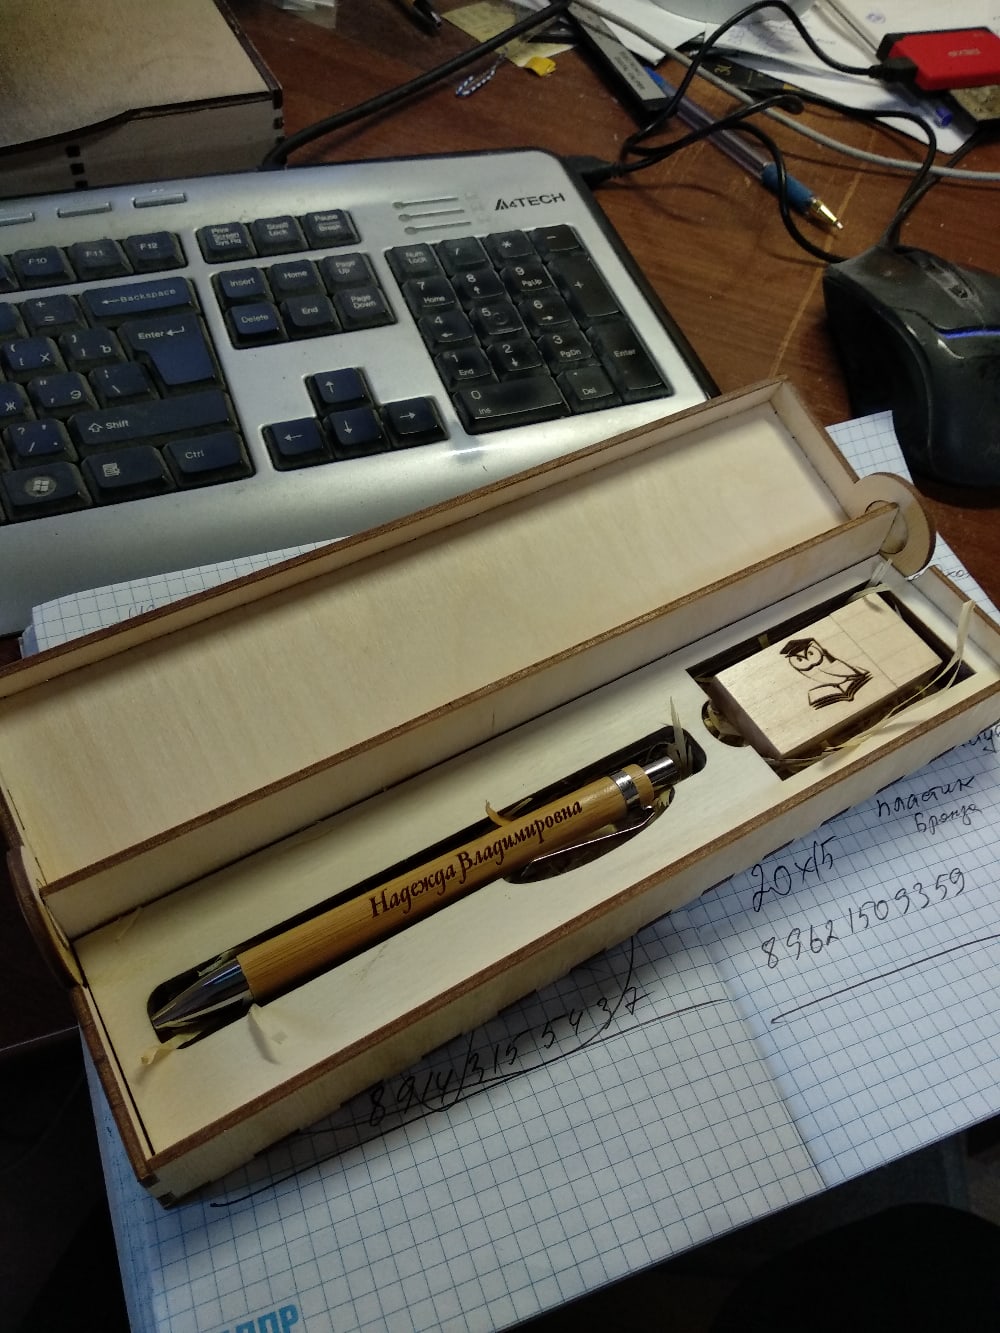 صندوق خشبي مقطوع بالليزر للقلم ومحرك أقراص فلاش USB